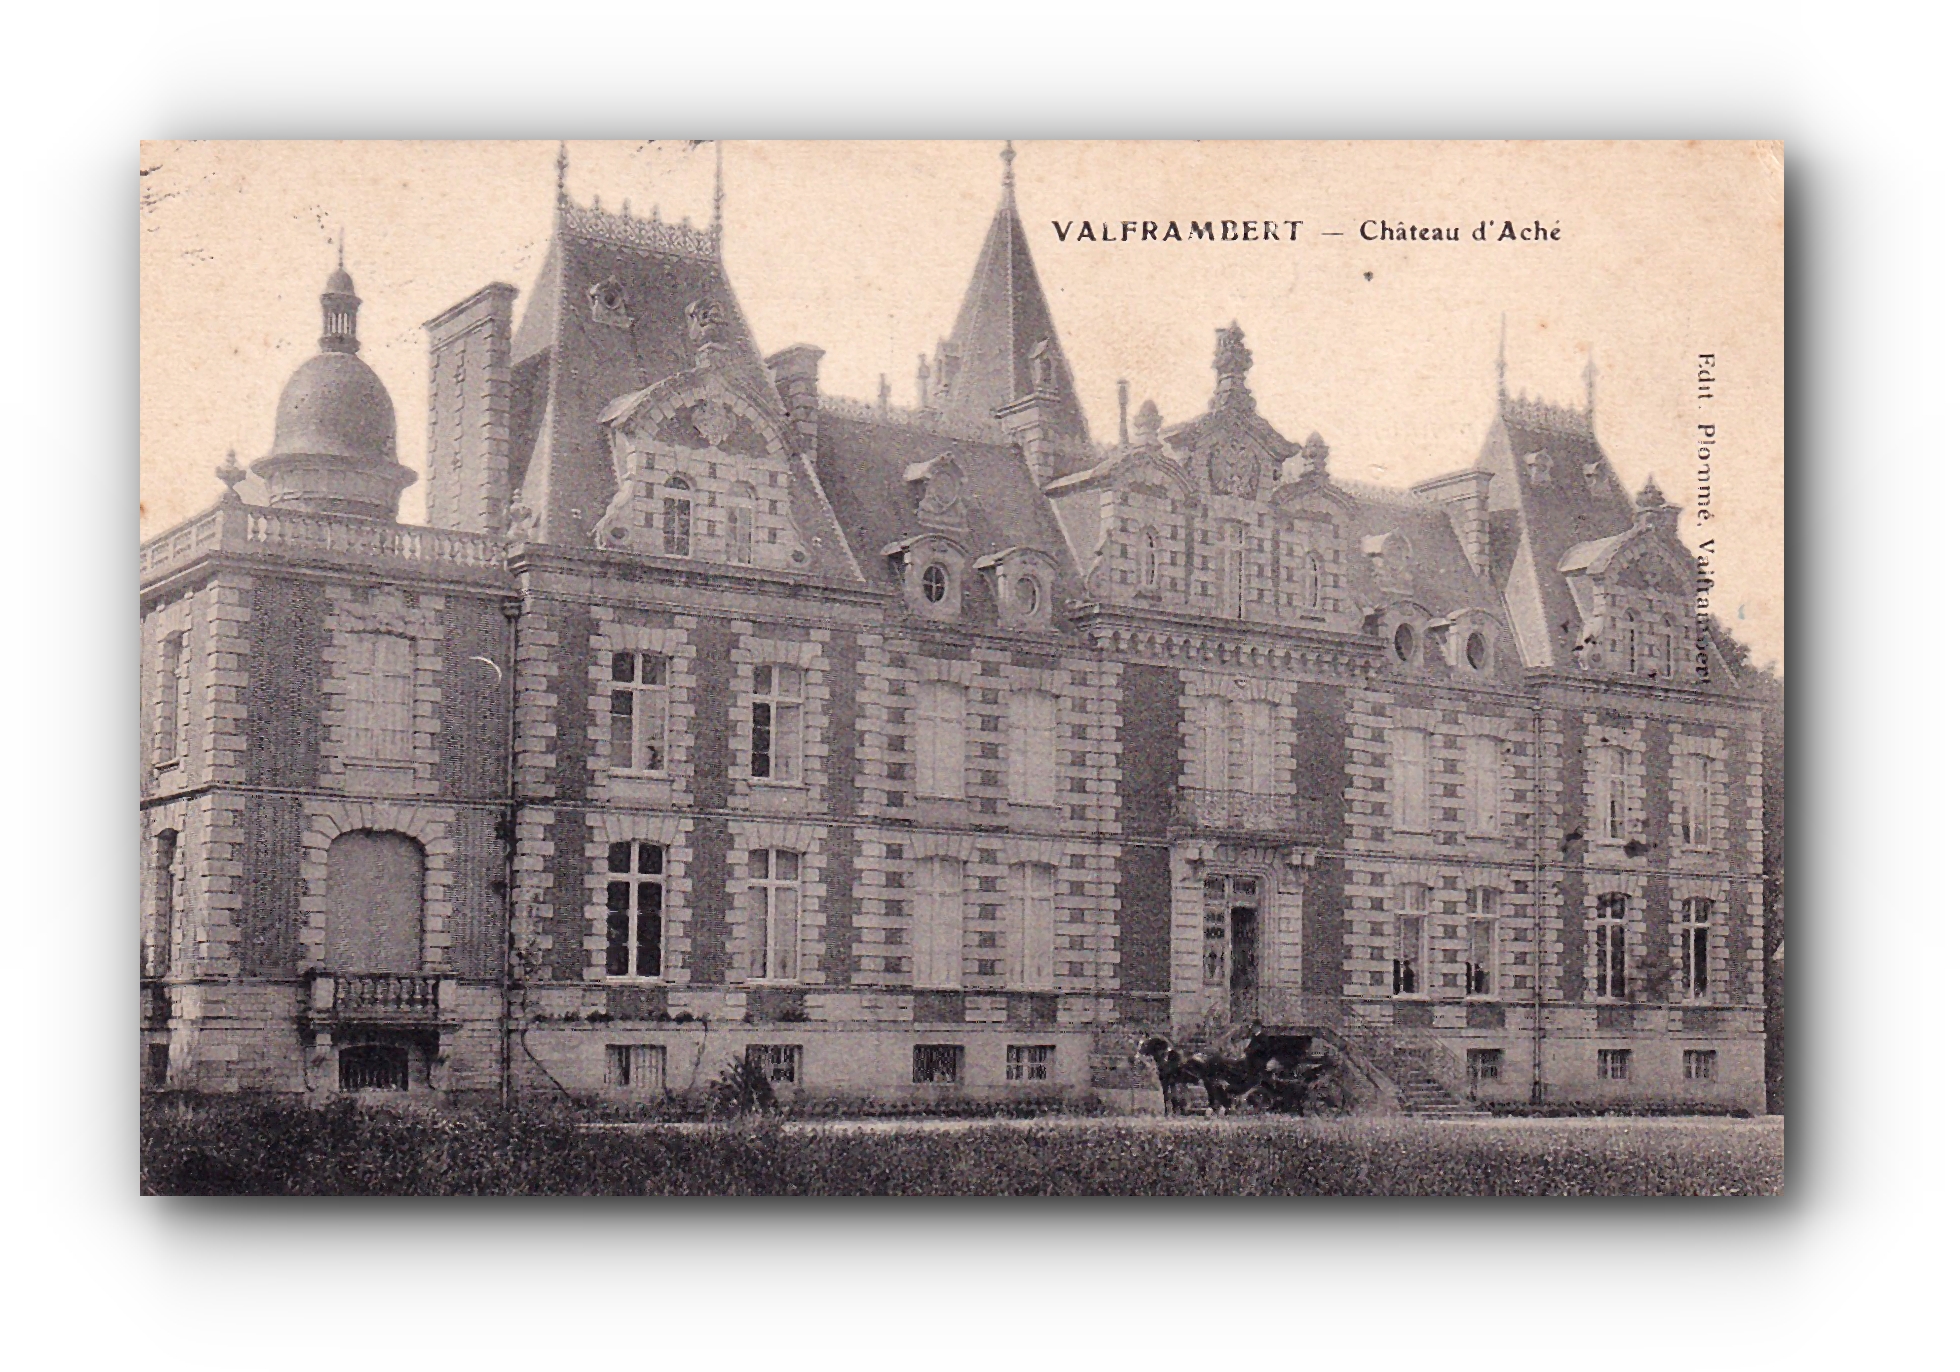 - Château d'Aché - VALFRAMBERT - 09.05.1915 -